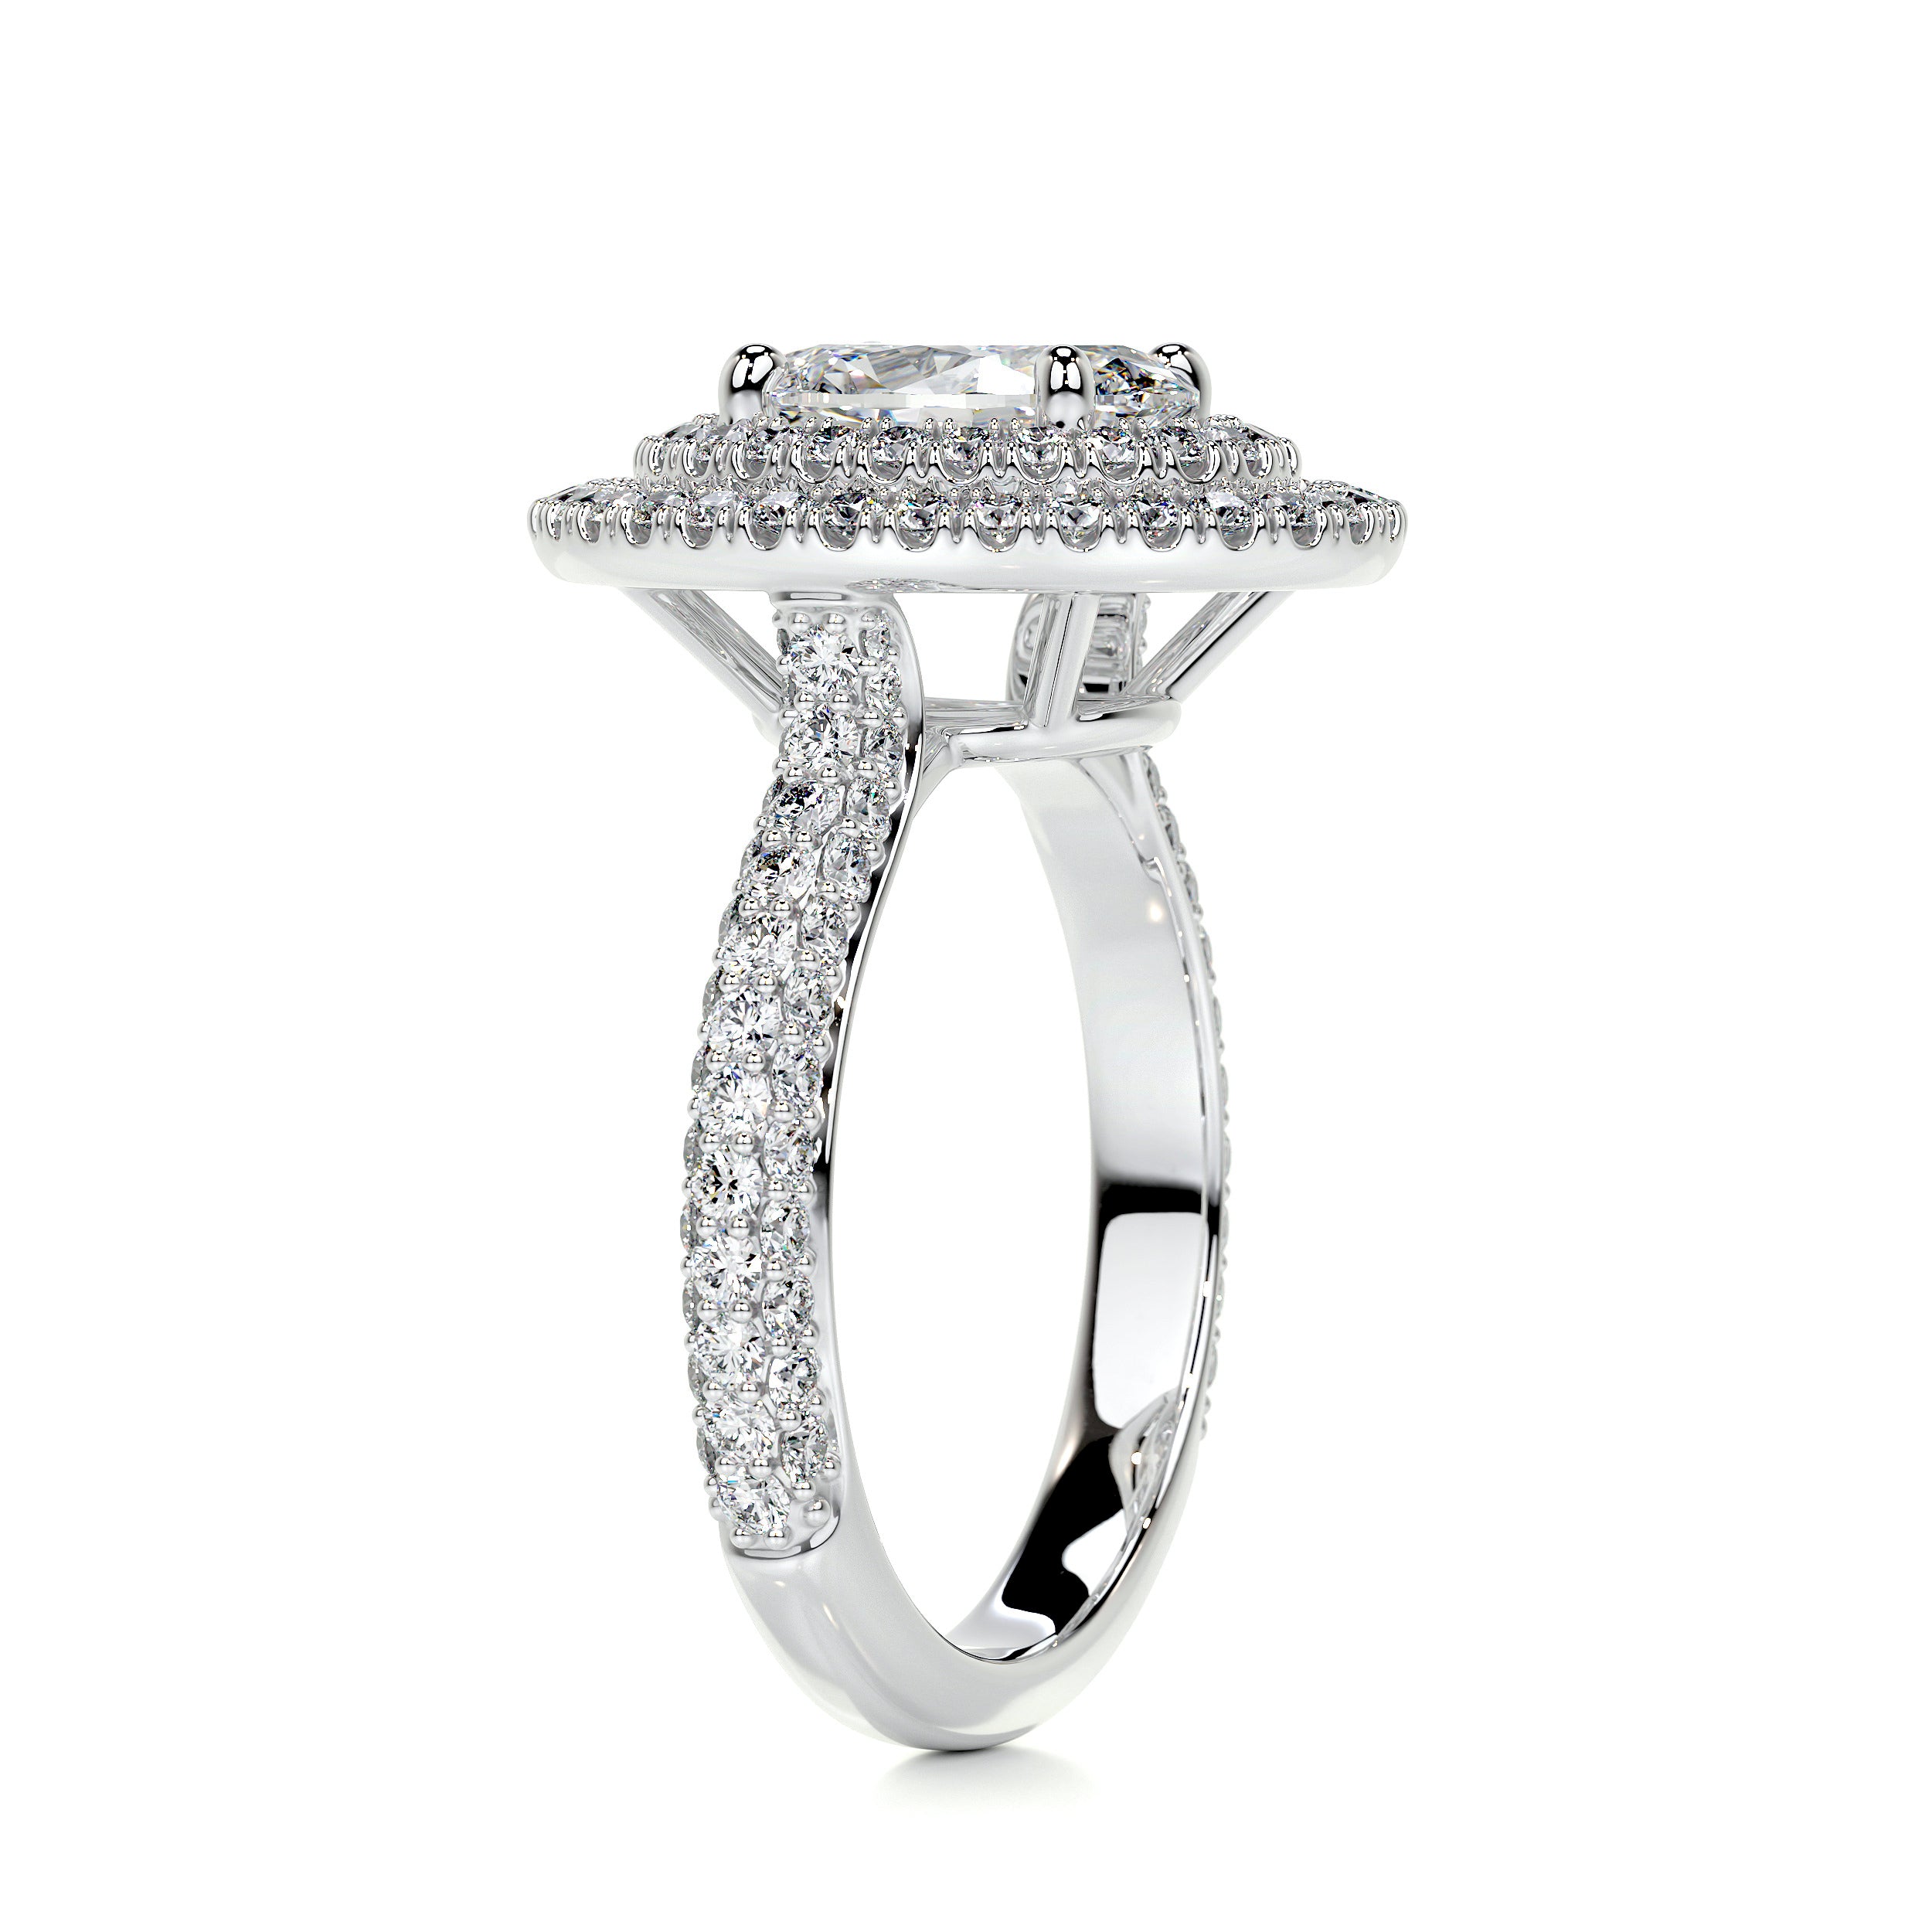 Nora Diamond Engagement Ring   (2.35 Carat) -14K White Gold